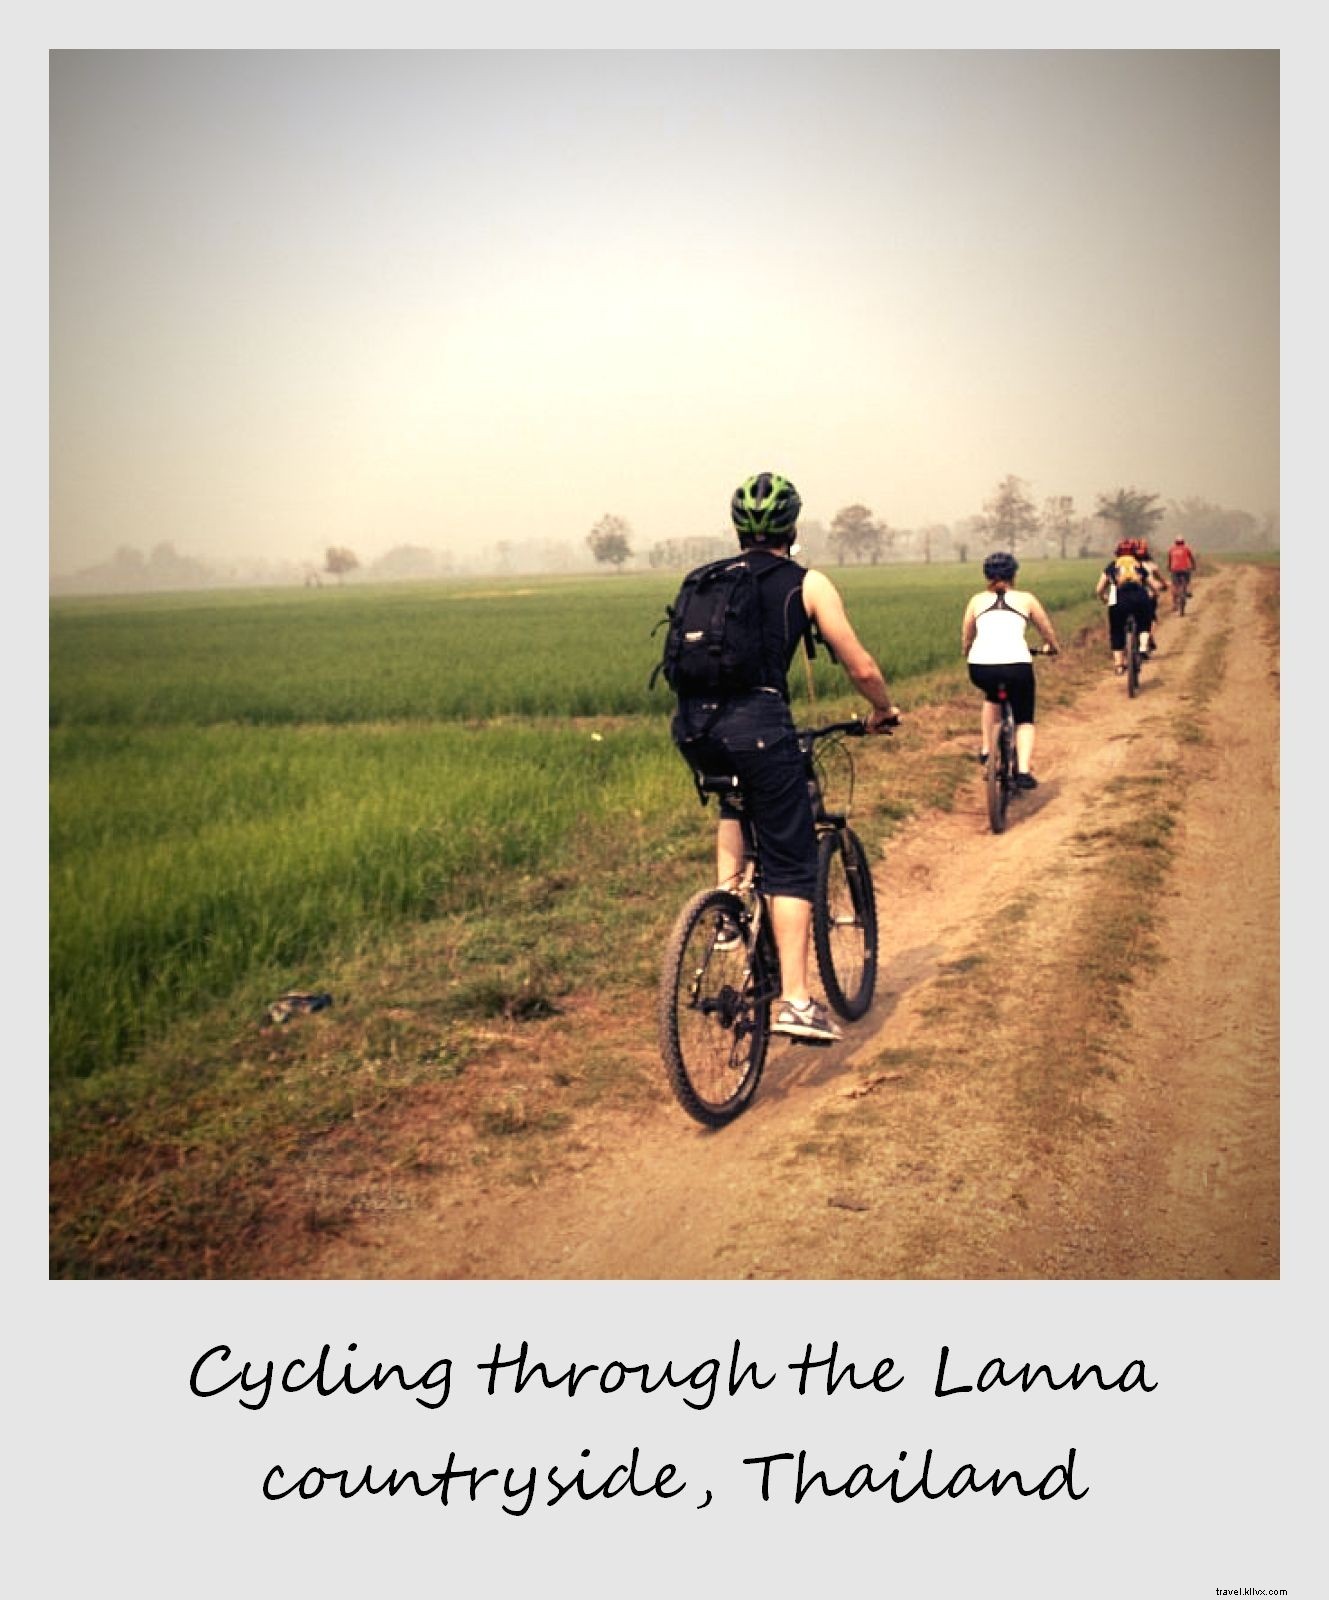 Polaroid minggu ini:Bersepeda melintasi sawah di Thailand Utara